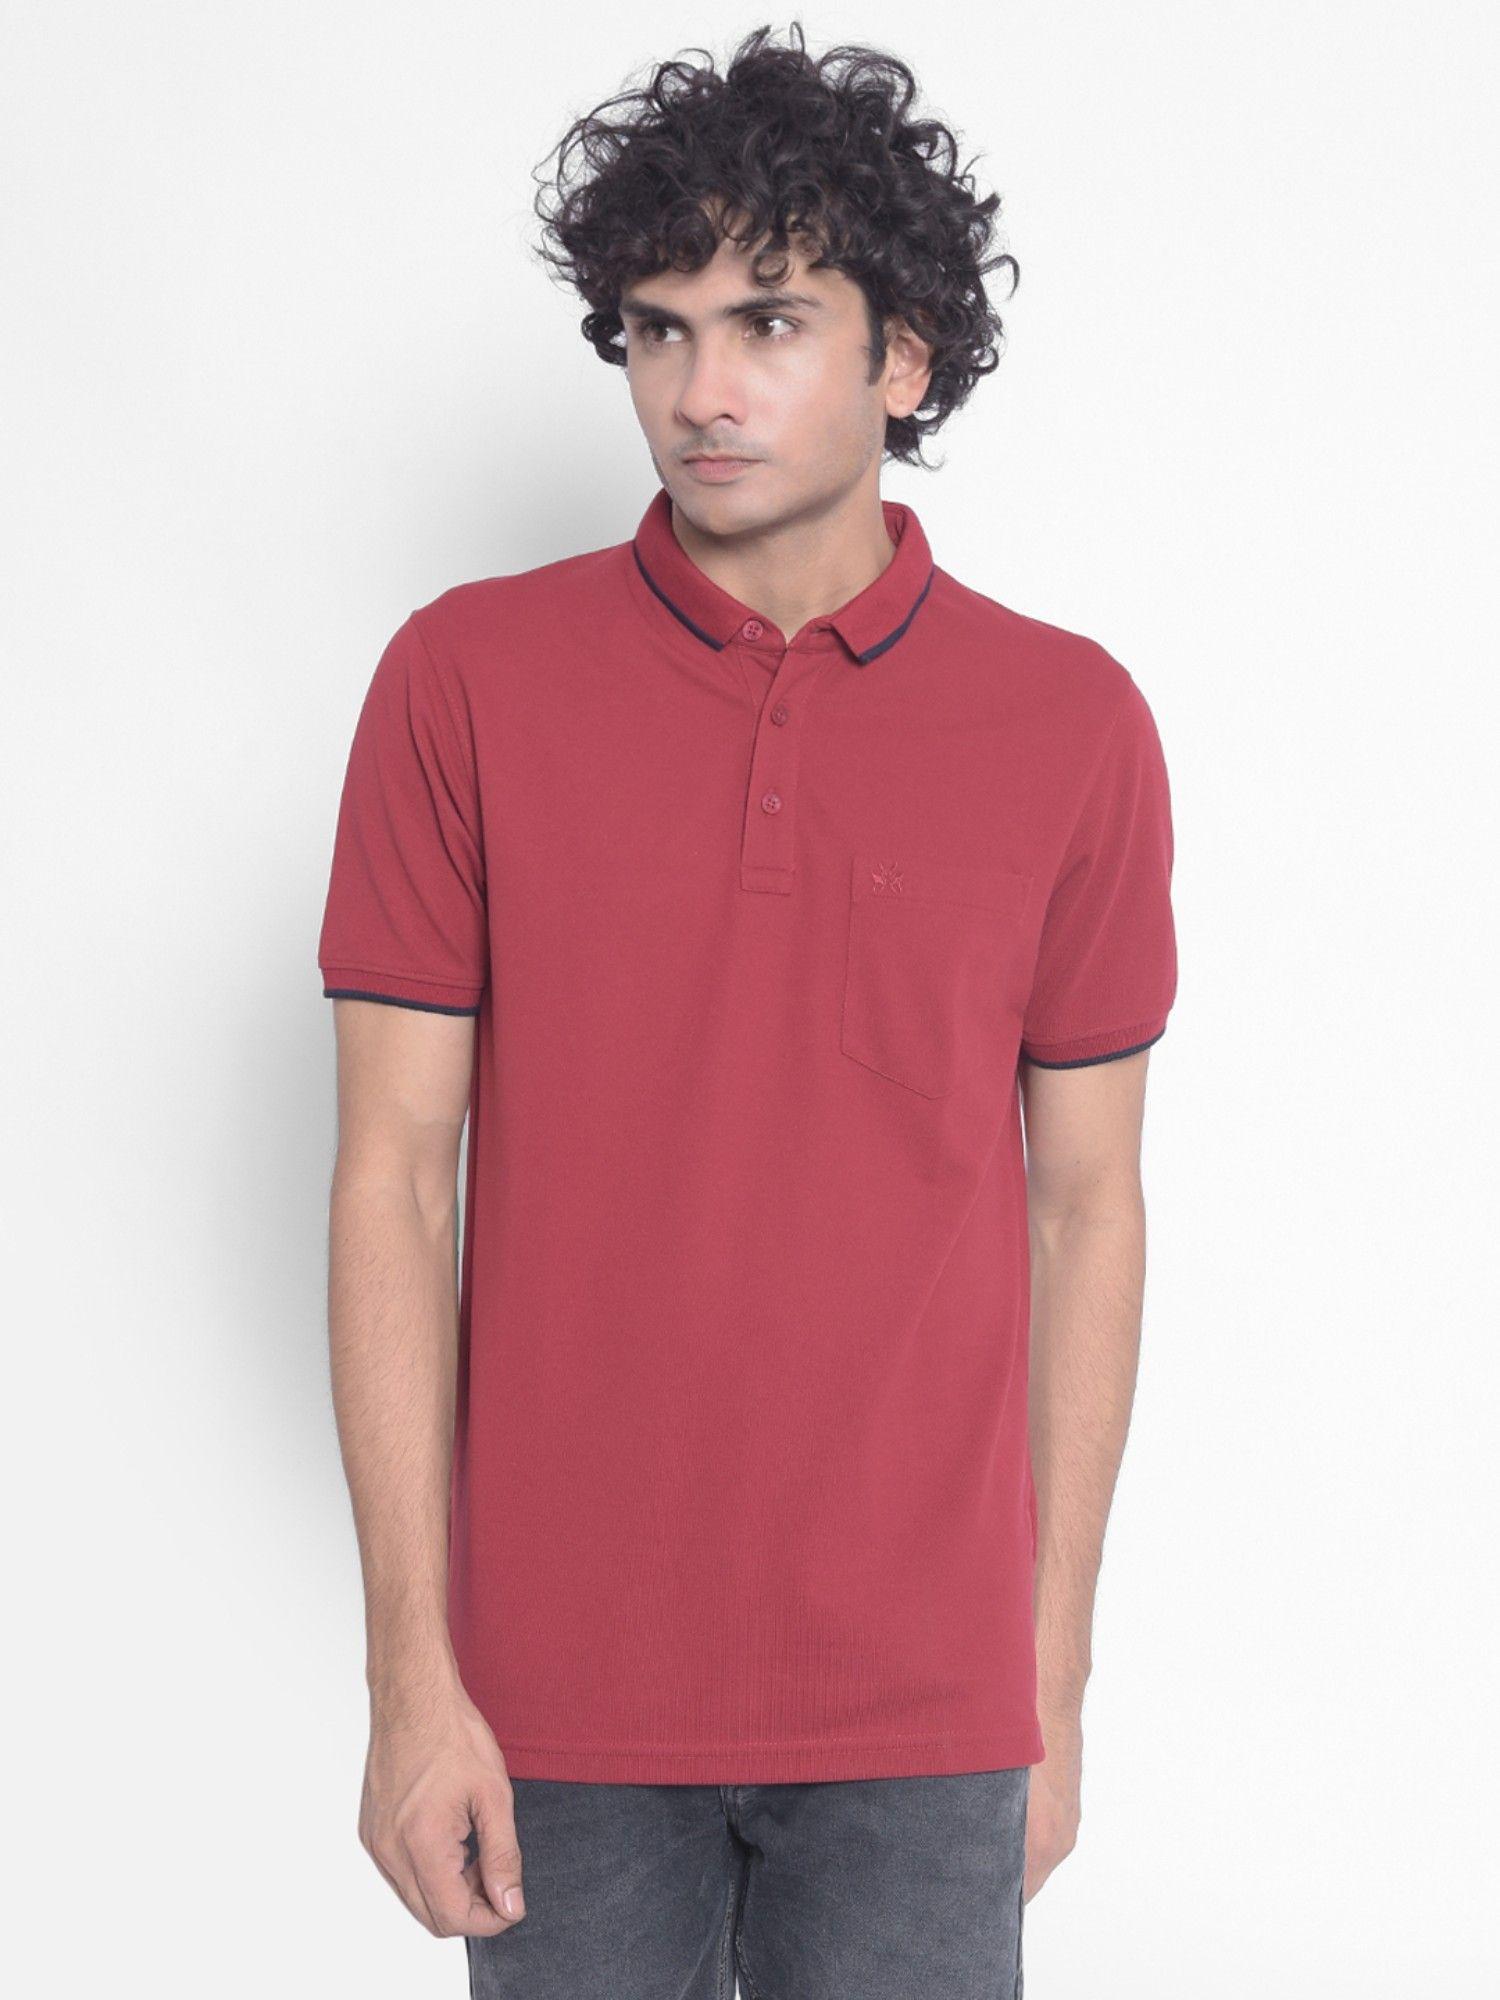 men's-maroon-polo-t-shirt